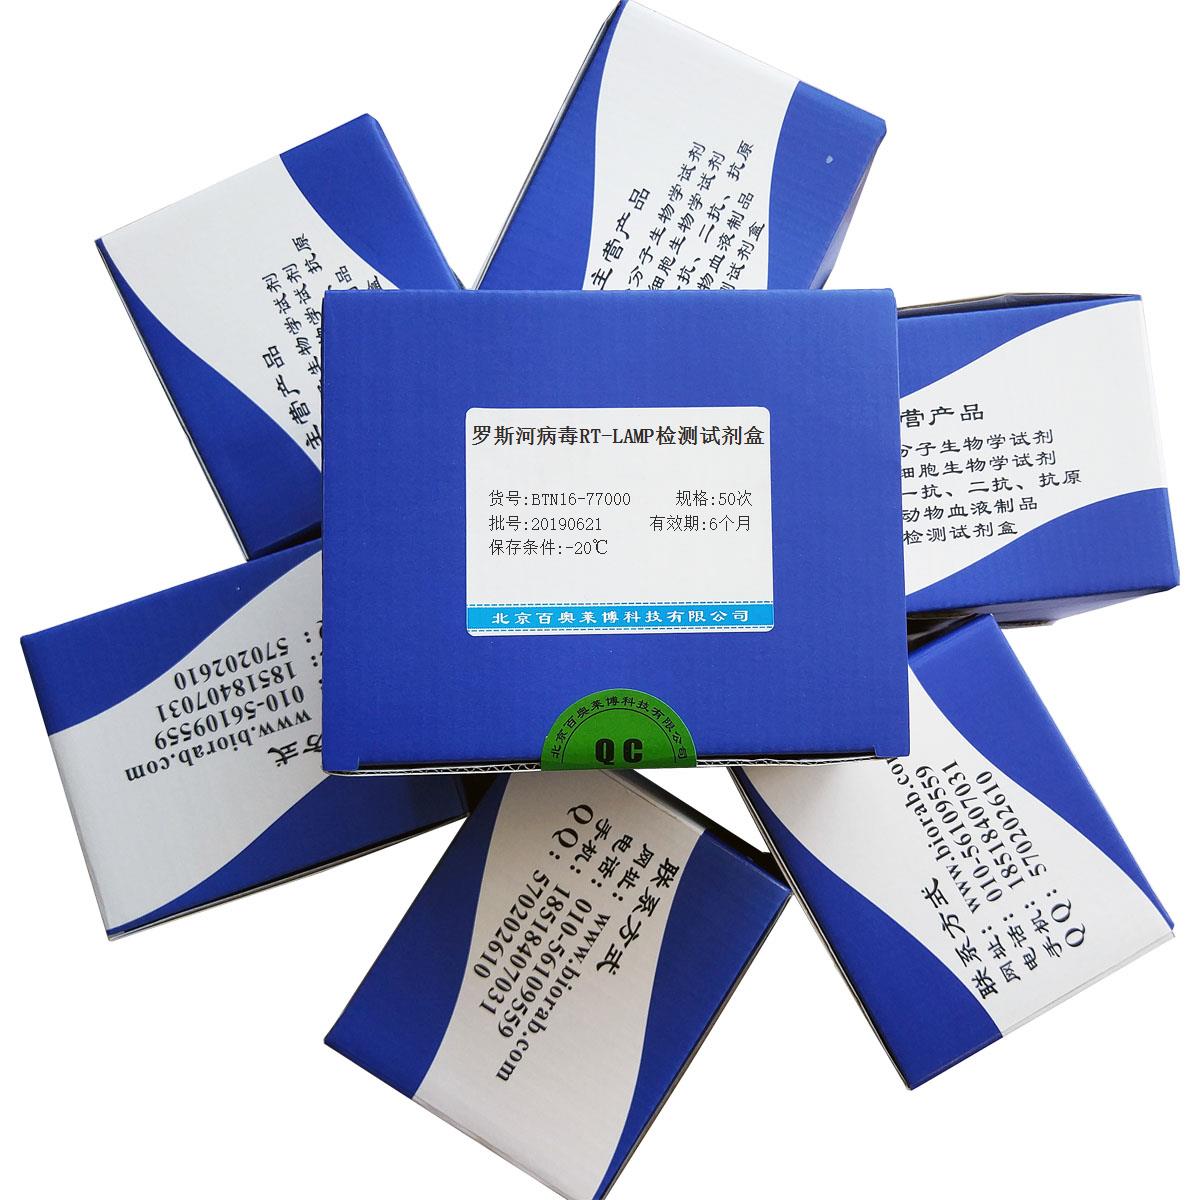 罗斯河病毒RT-LAMP检测试剂盒北京现货